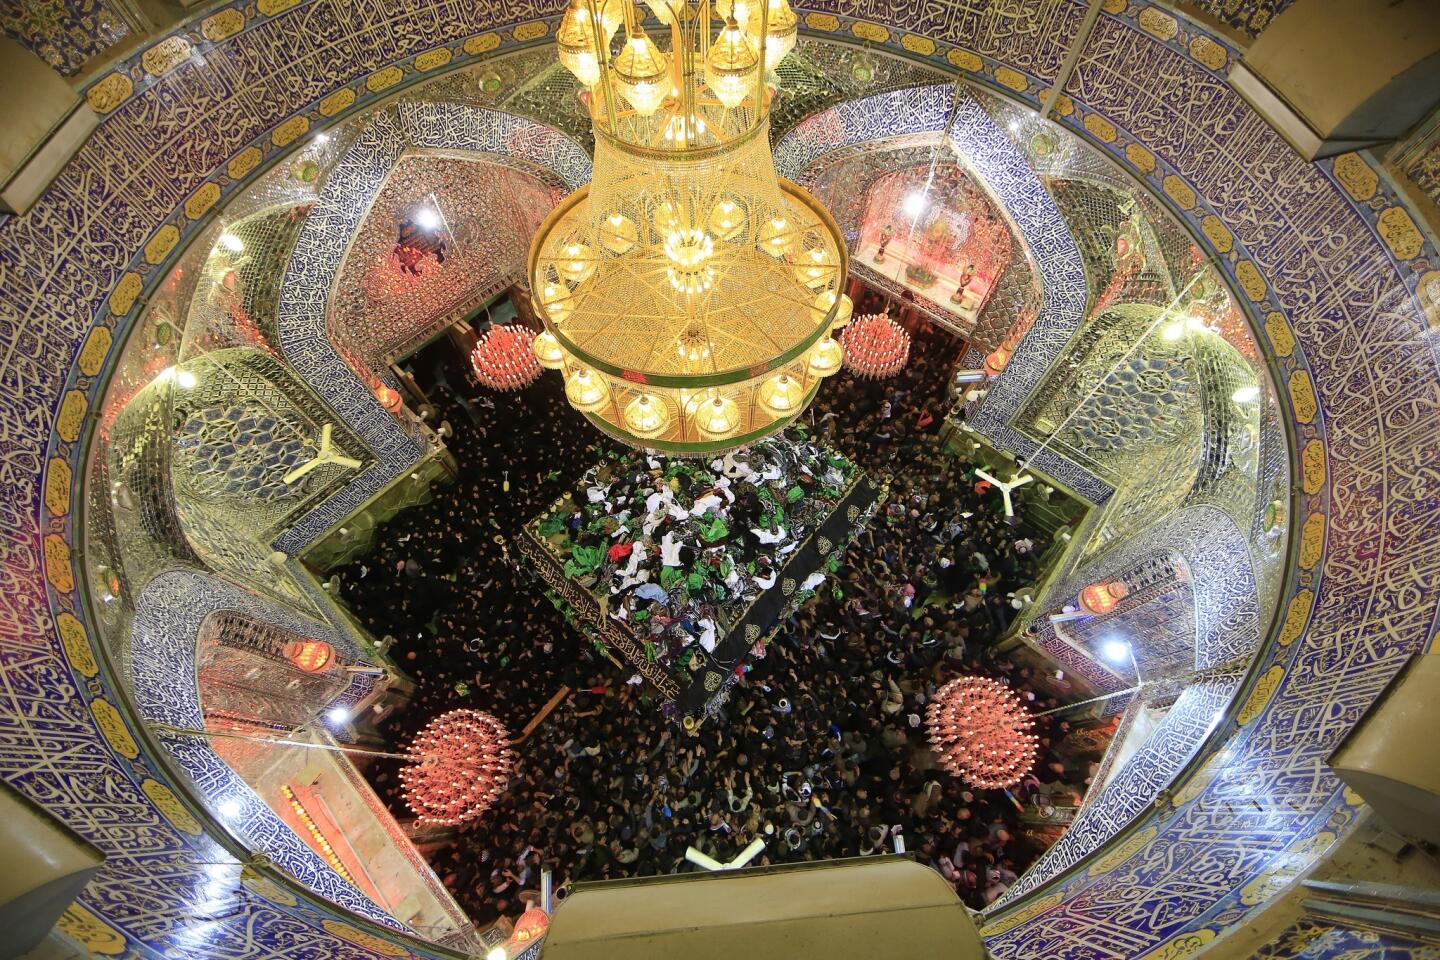 Shrine of Imam Ali